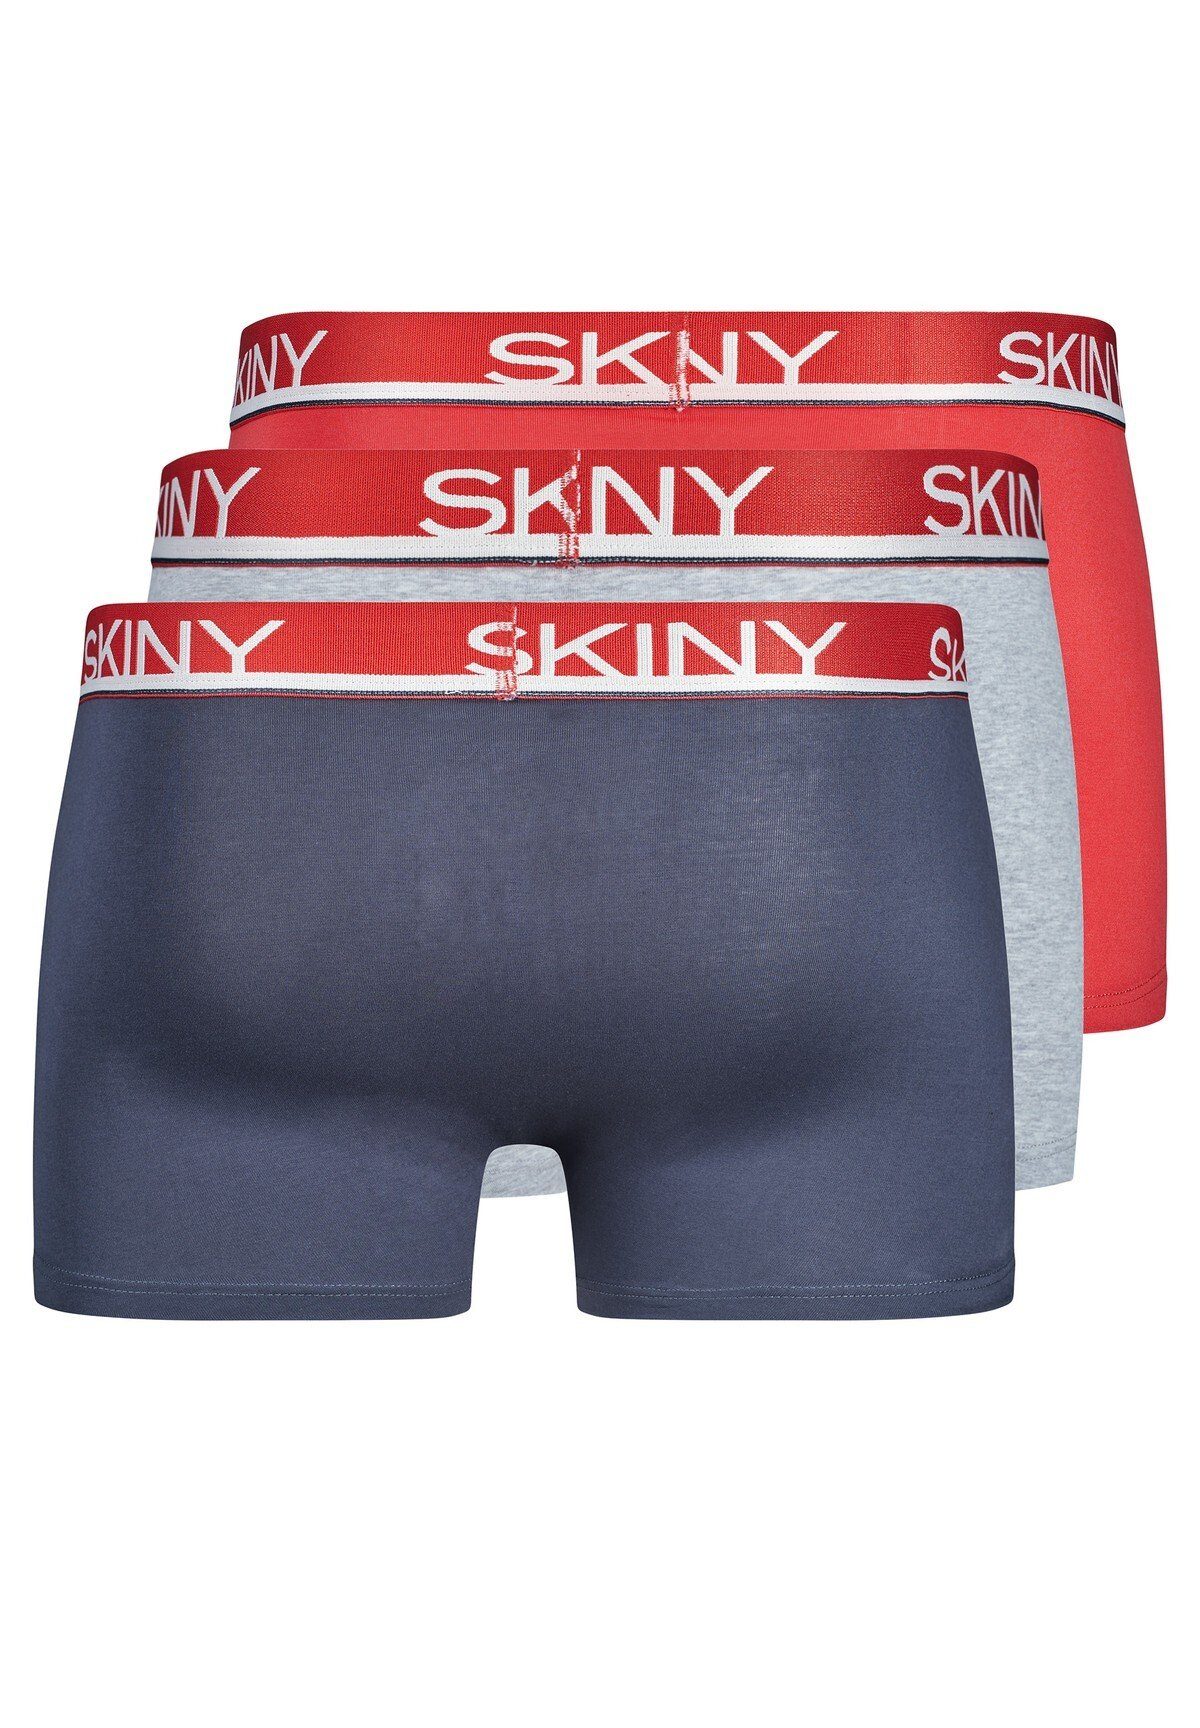 - Boxer Pants Shorts Trunks, Boxer Blau/Grau/Rot Herren Skiny 3er Pack